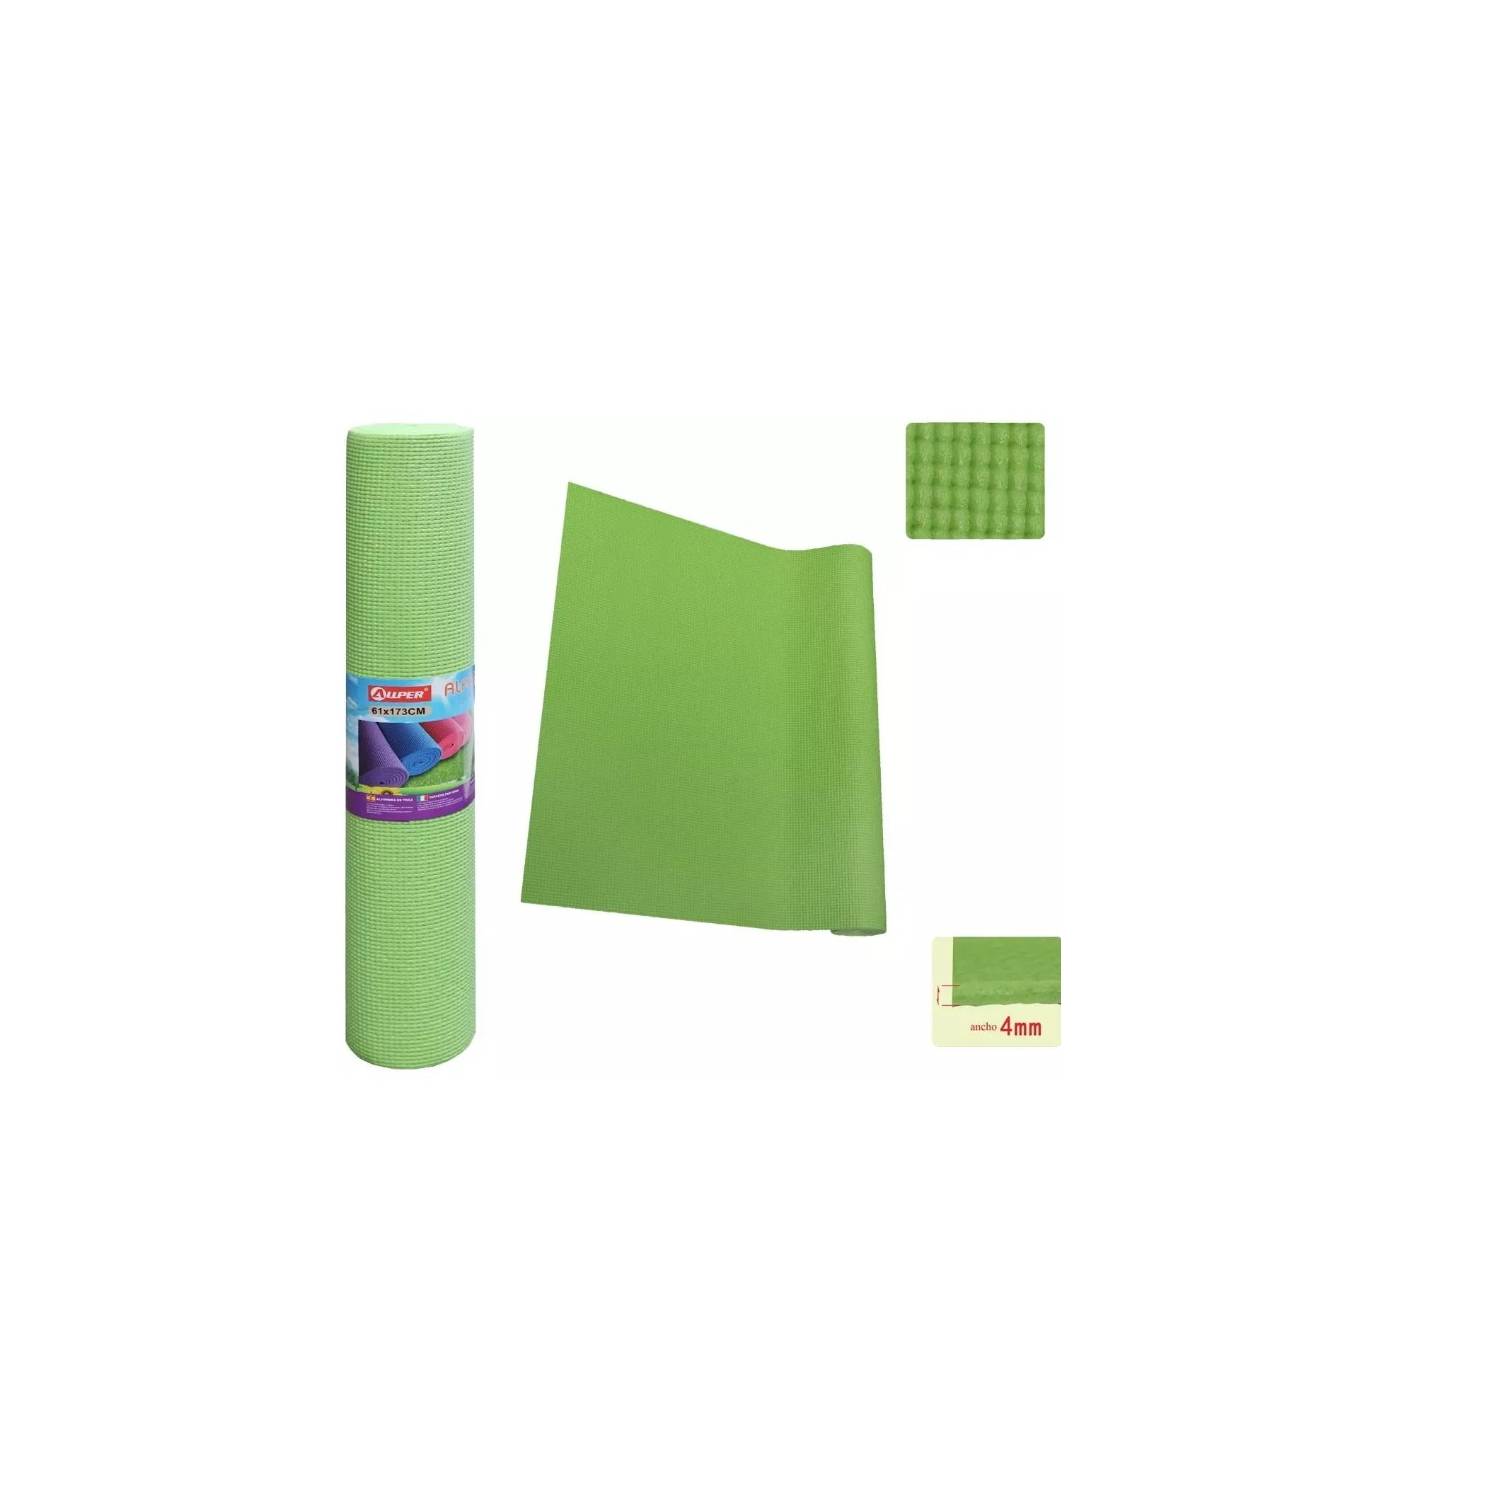 Kit de entrenamiento funcional Trx, entrenamiento en casa, cinta adhesiva  de color verde